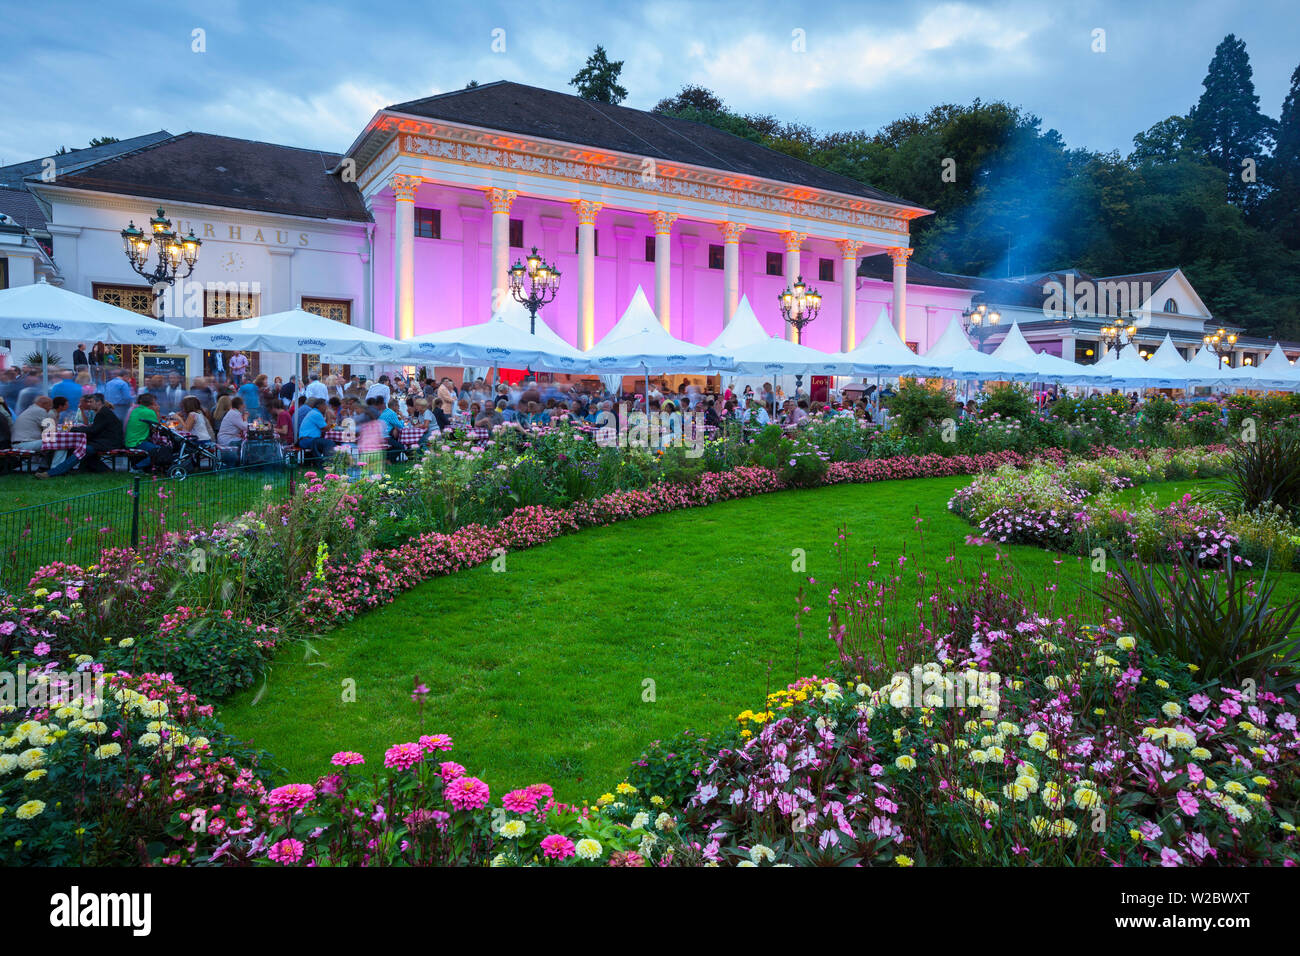 Festival Woche, Baden-Baden, Schwarzwald, Baden Württemberg, Deutschland, Europa Stockfoto